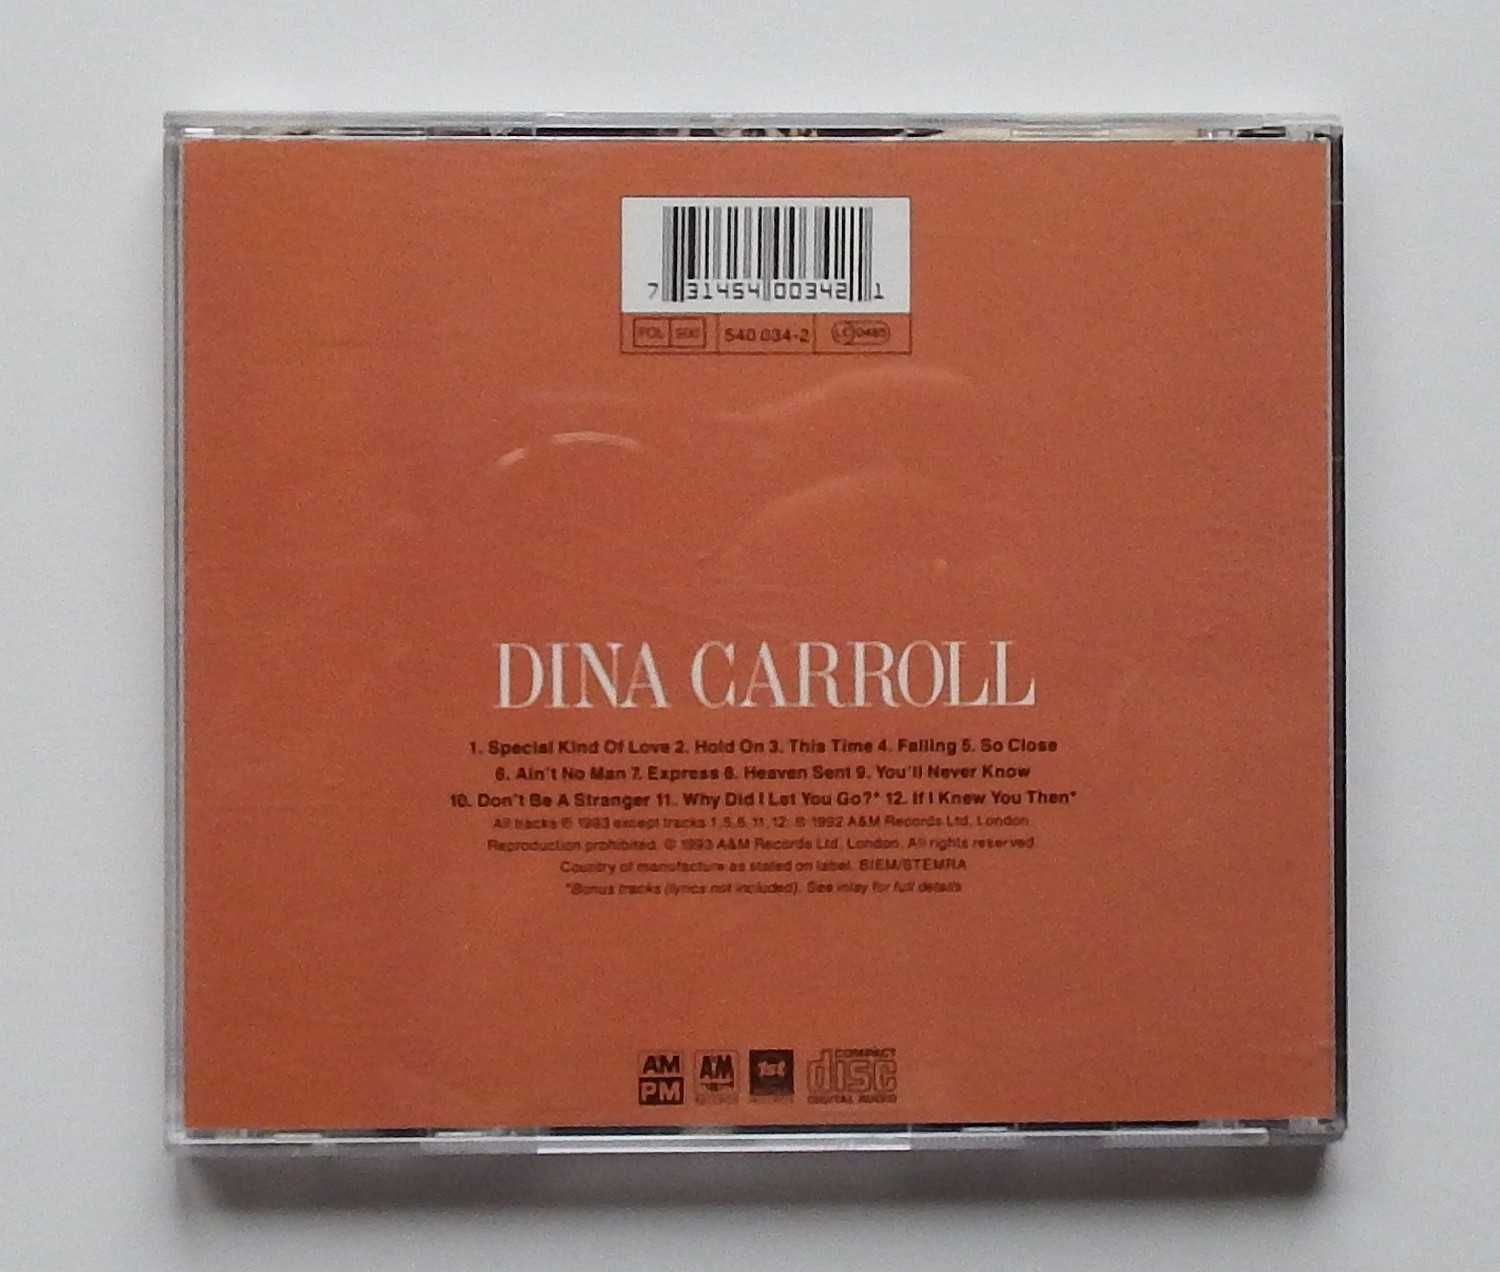 CD Dina Carroll - "So Close"